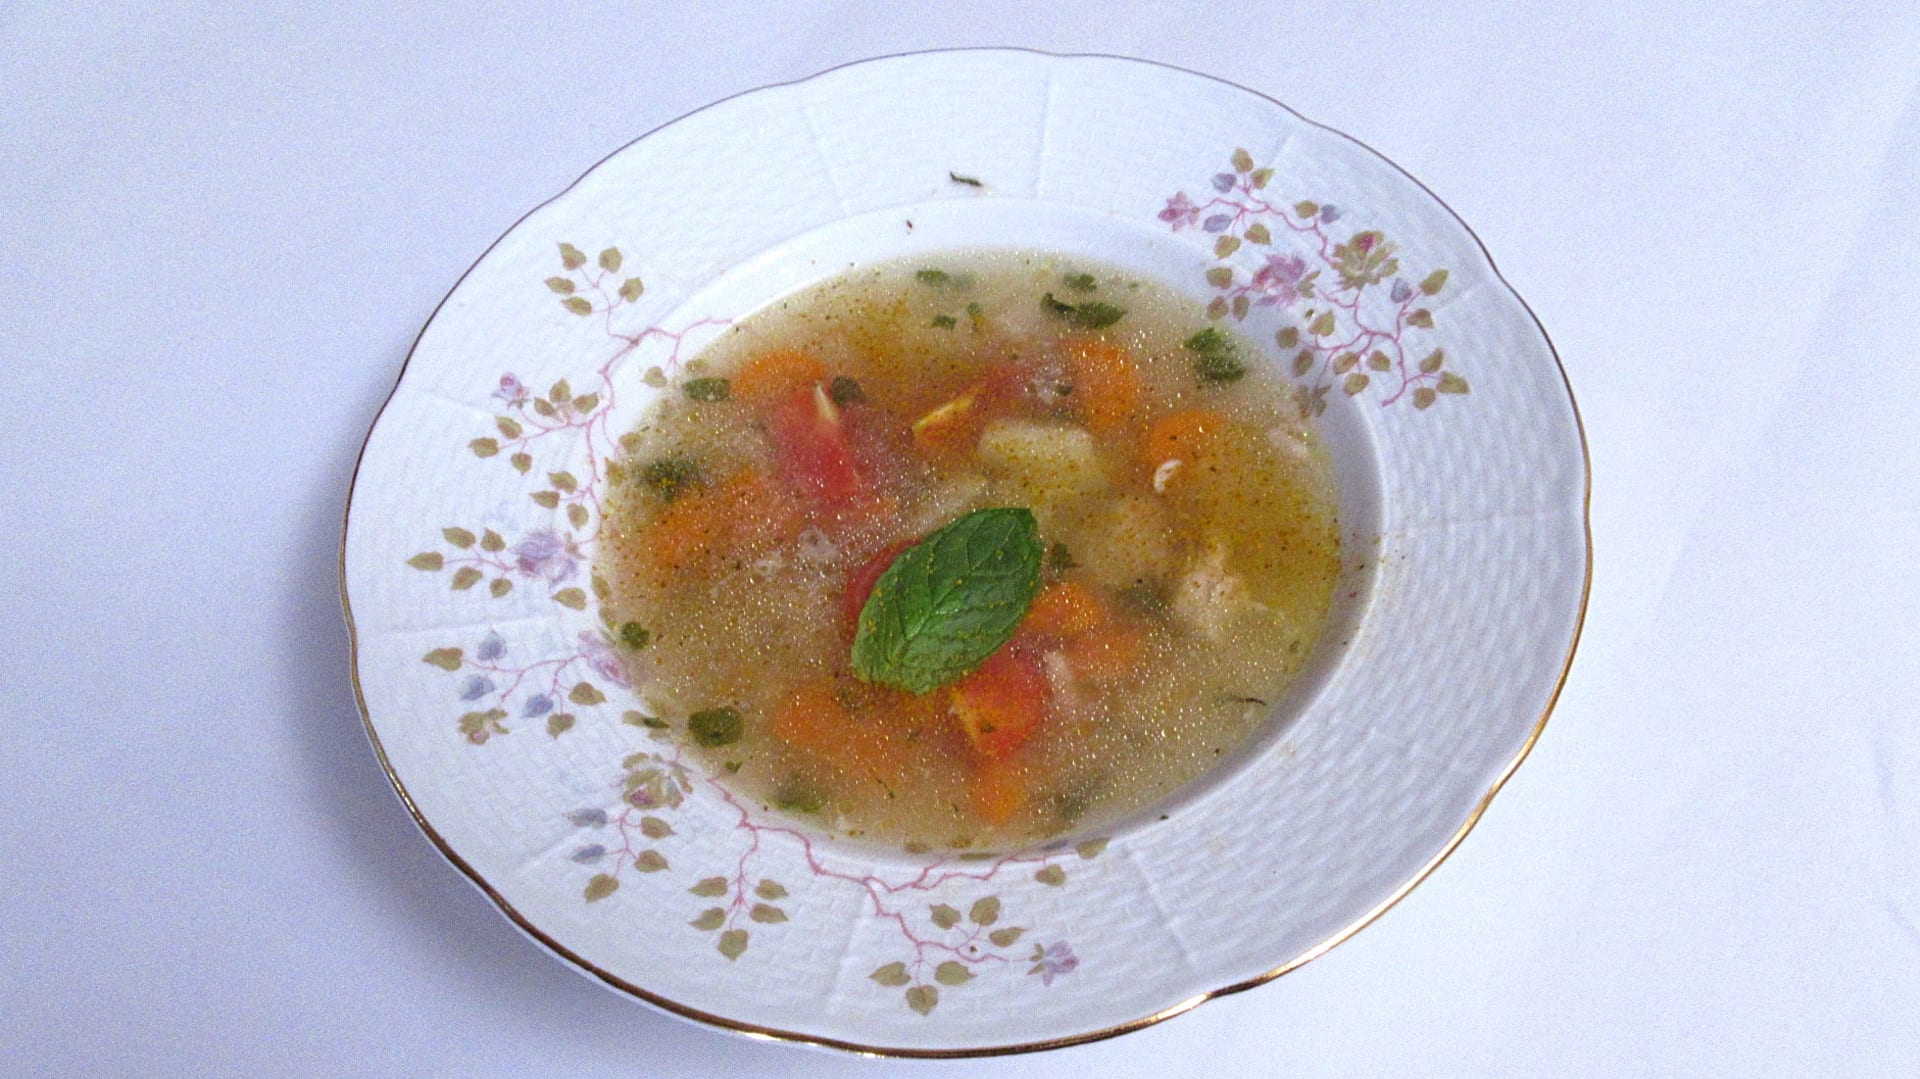 Supa ot pile – kuřecí polévka po bulharsku